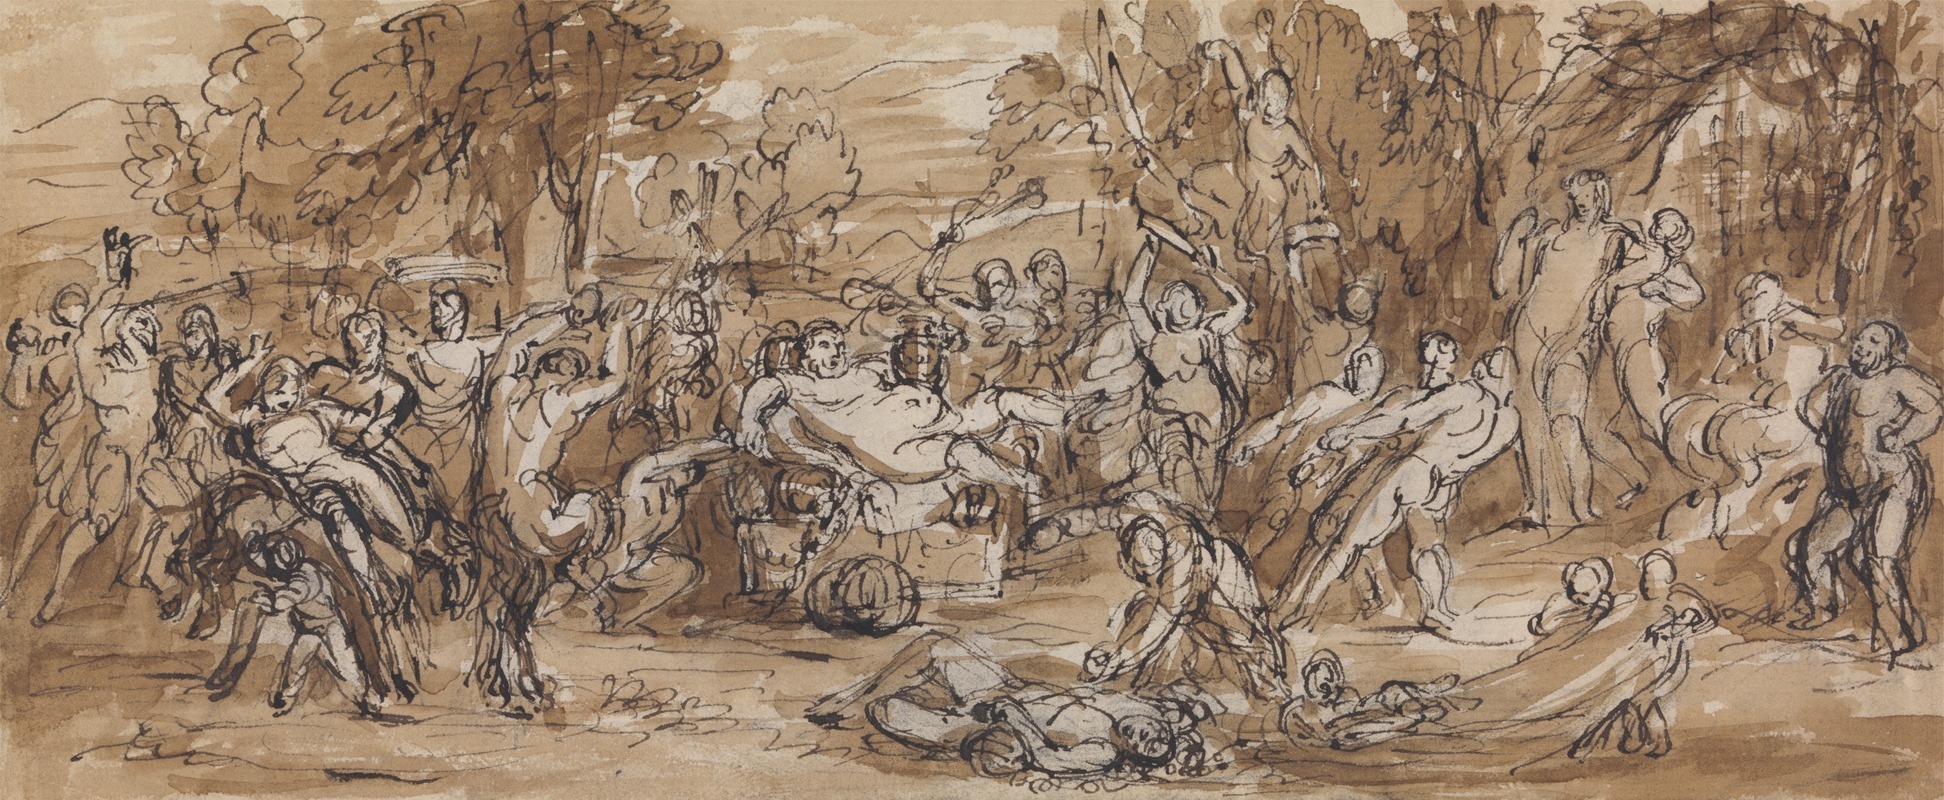 Robert Smirke - Figure Study of a Bacchanalia Celebration in a Wooded Landscape